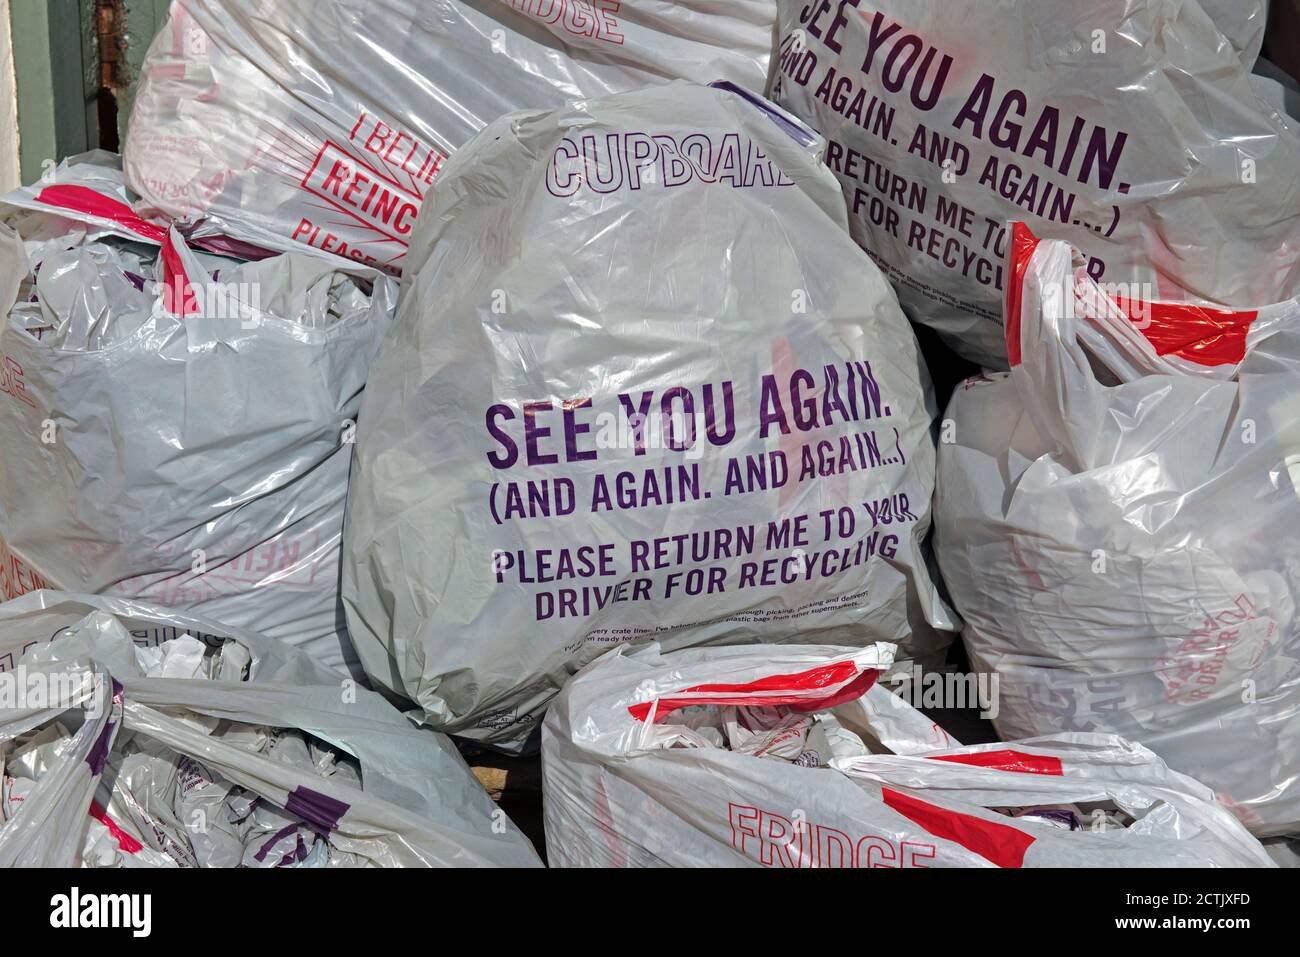 Sacchetti di plastica Ocado a portata di mano per la raccolta da parte del conducente da riciclare e trasformarli in nuove borse. Il prelievo è stato sospeso a causa di Coronavirus Foto Stock